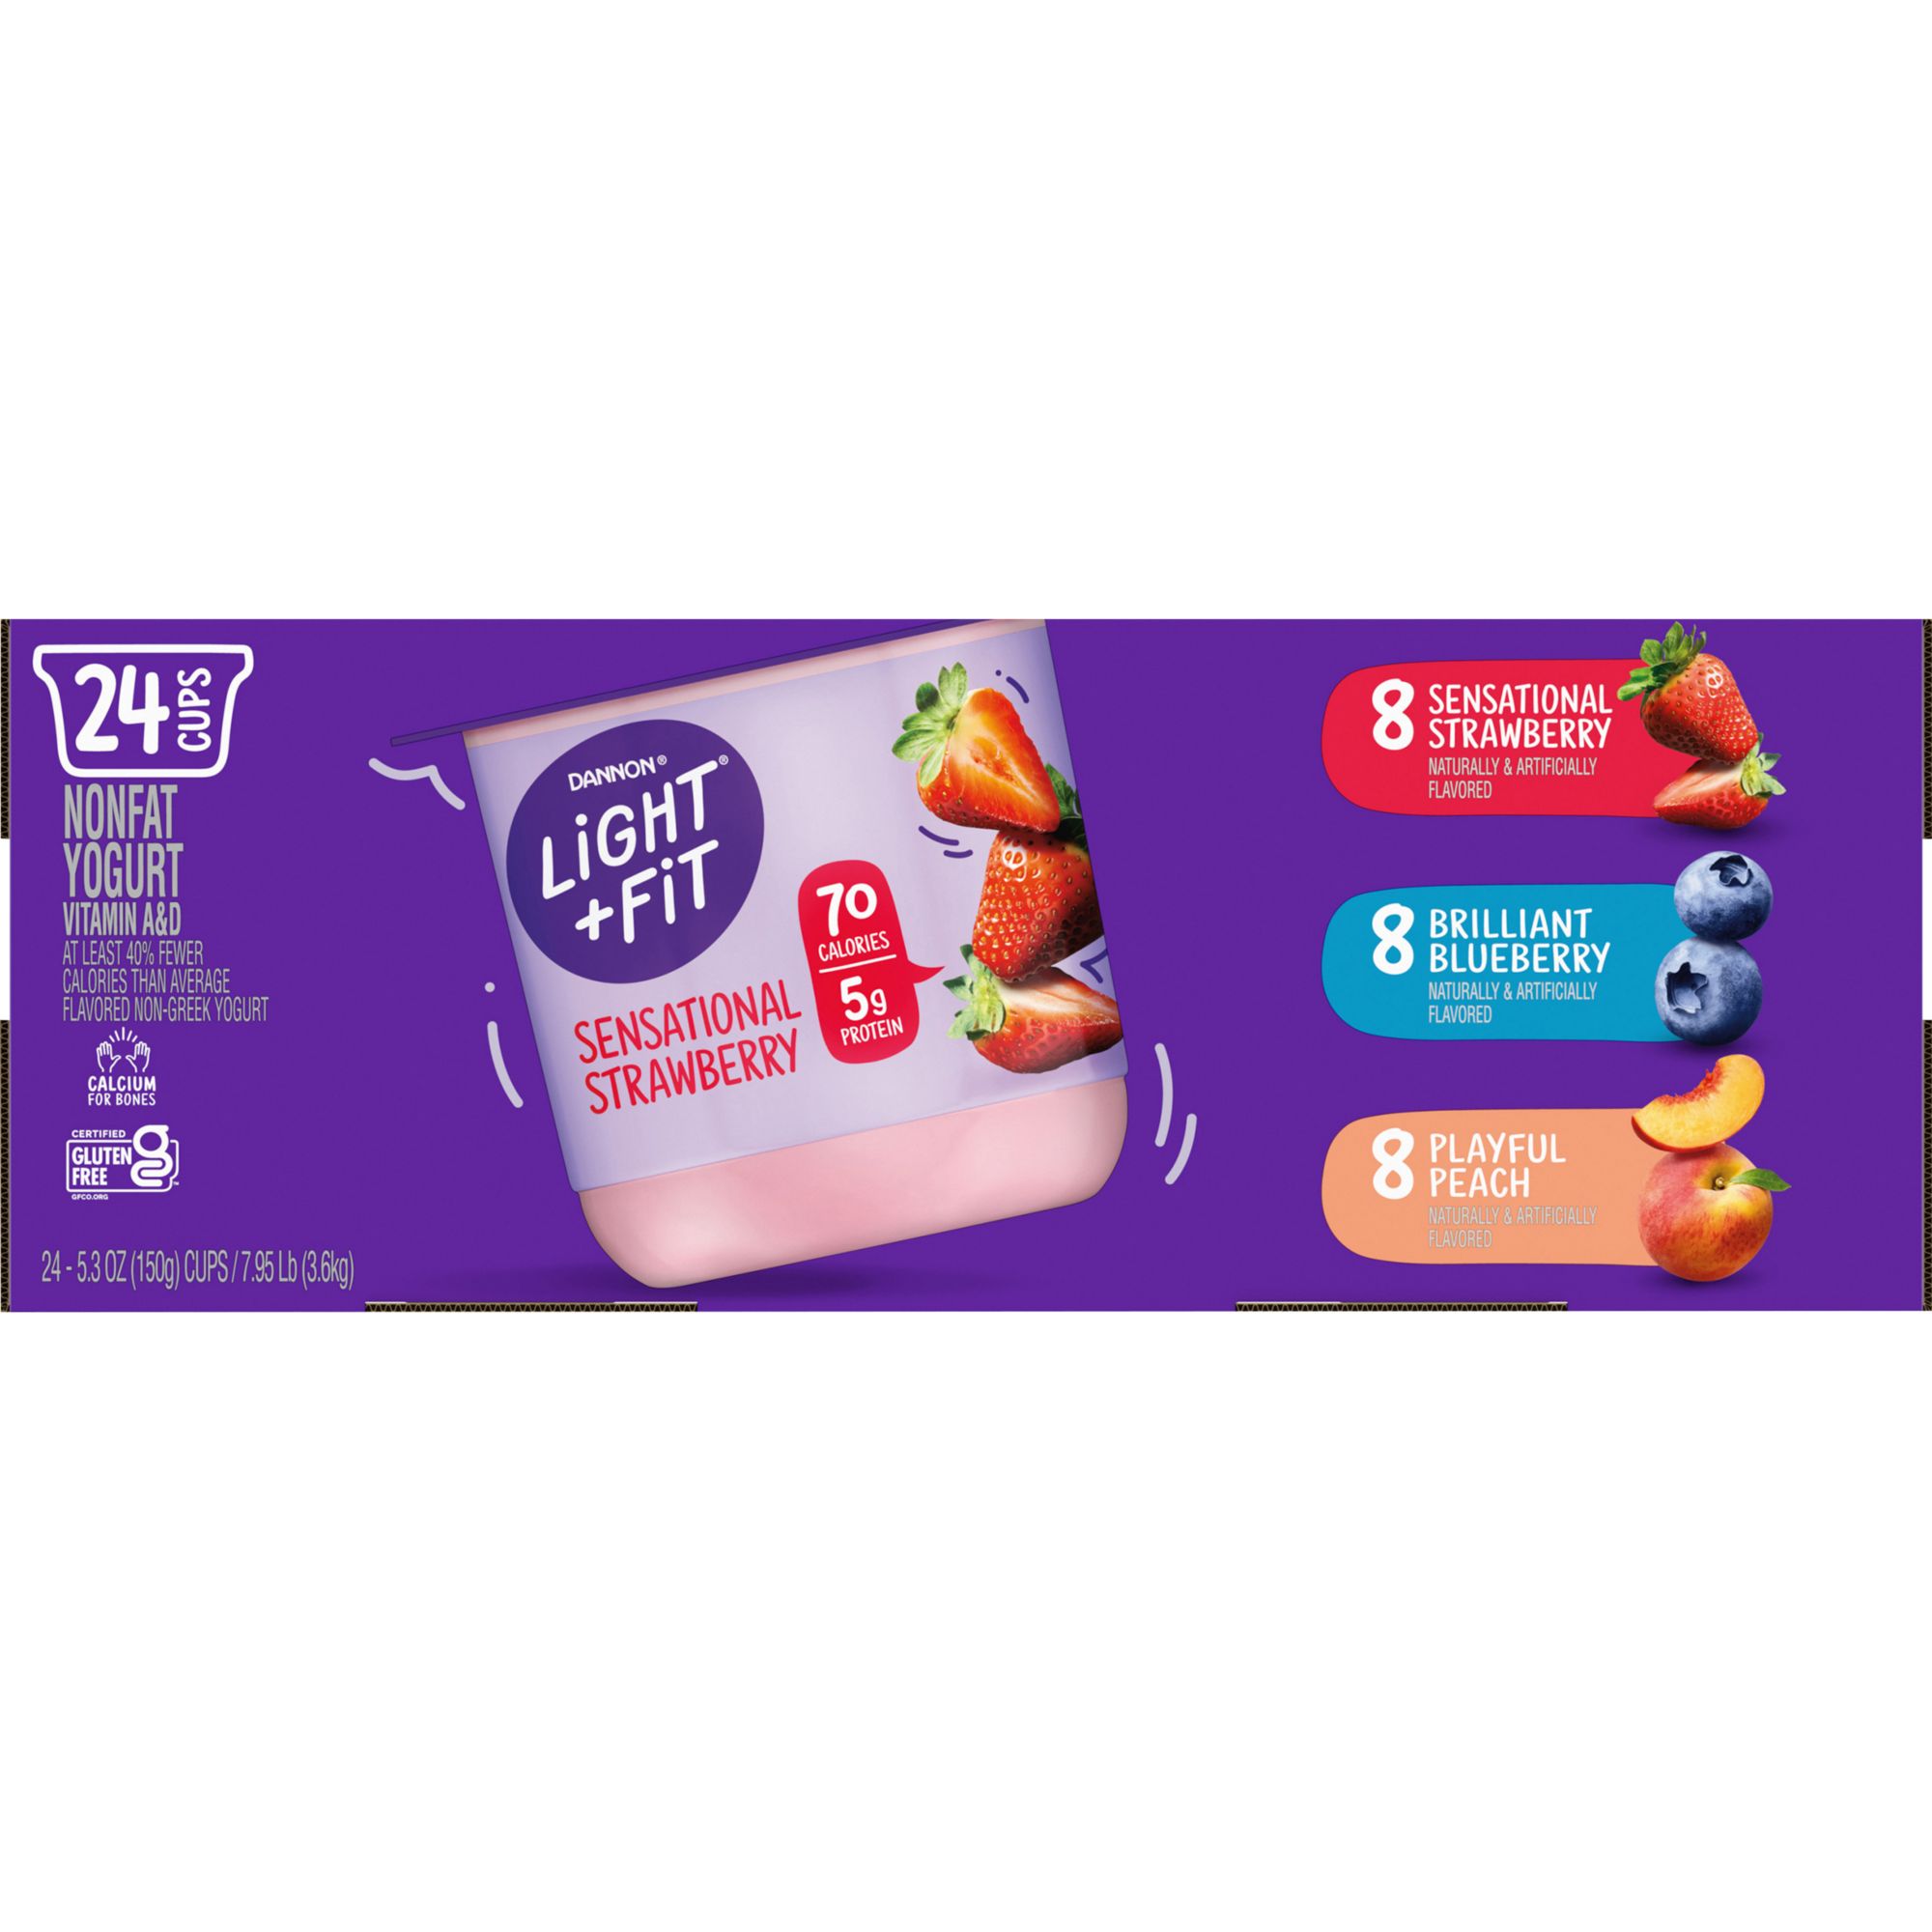 Dannon Light & Fit Non-Fat Yogurt, 24 ct./5.3 oz.